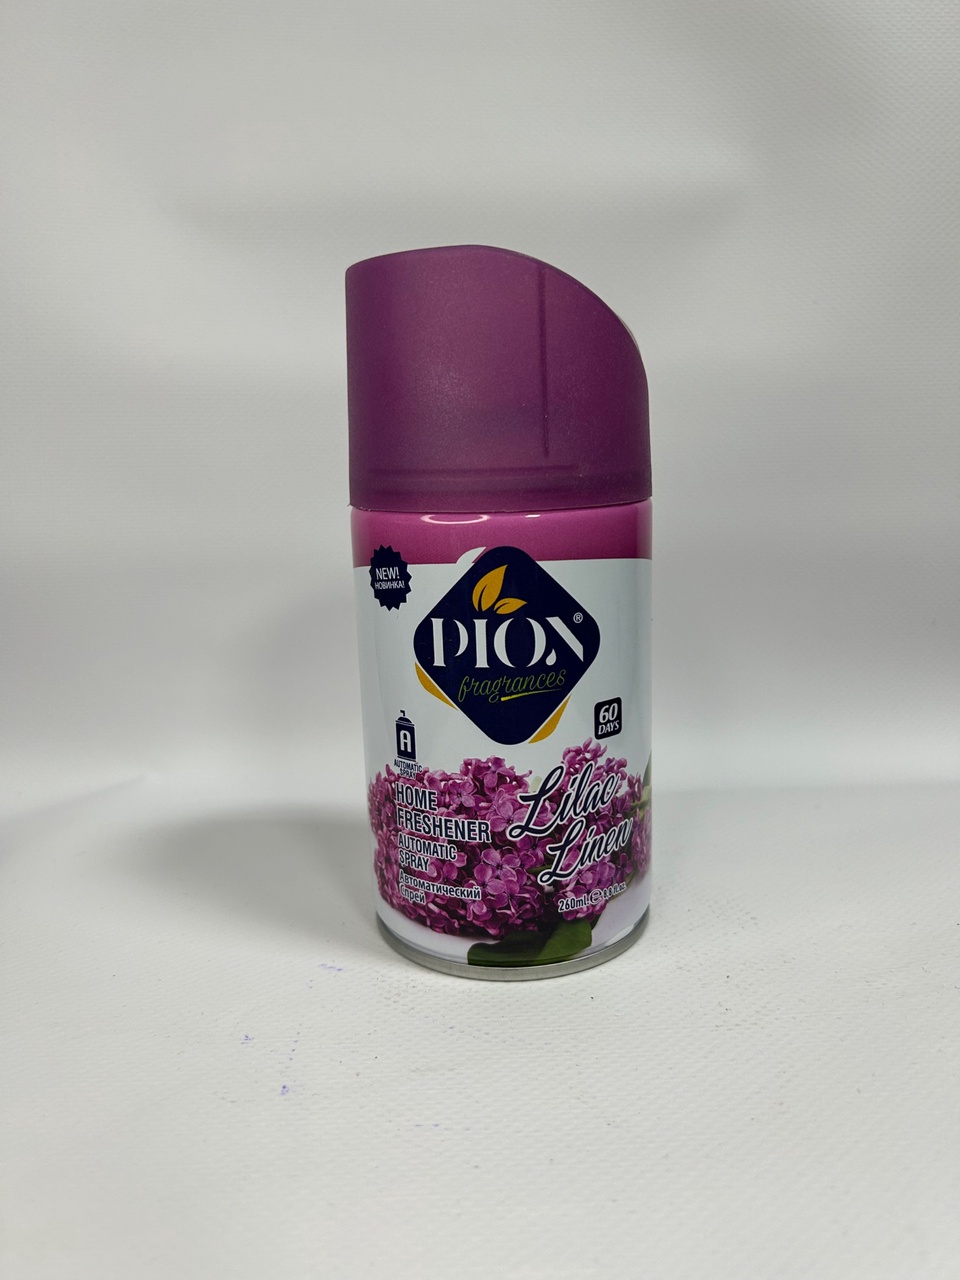 Освежитель воздуха Diox с ароматом «Сирень» - 180 ₽, заказать онлайн.